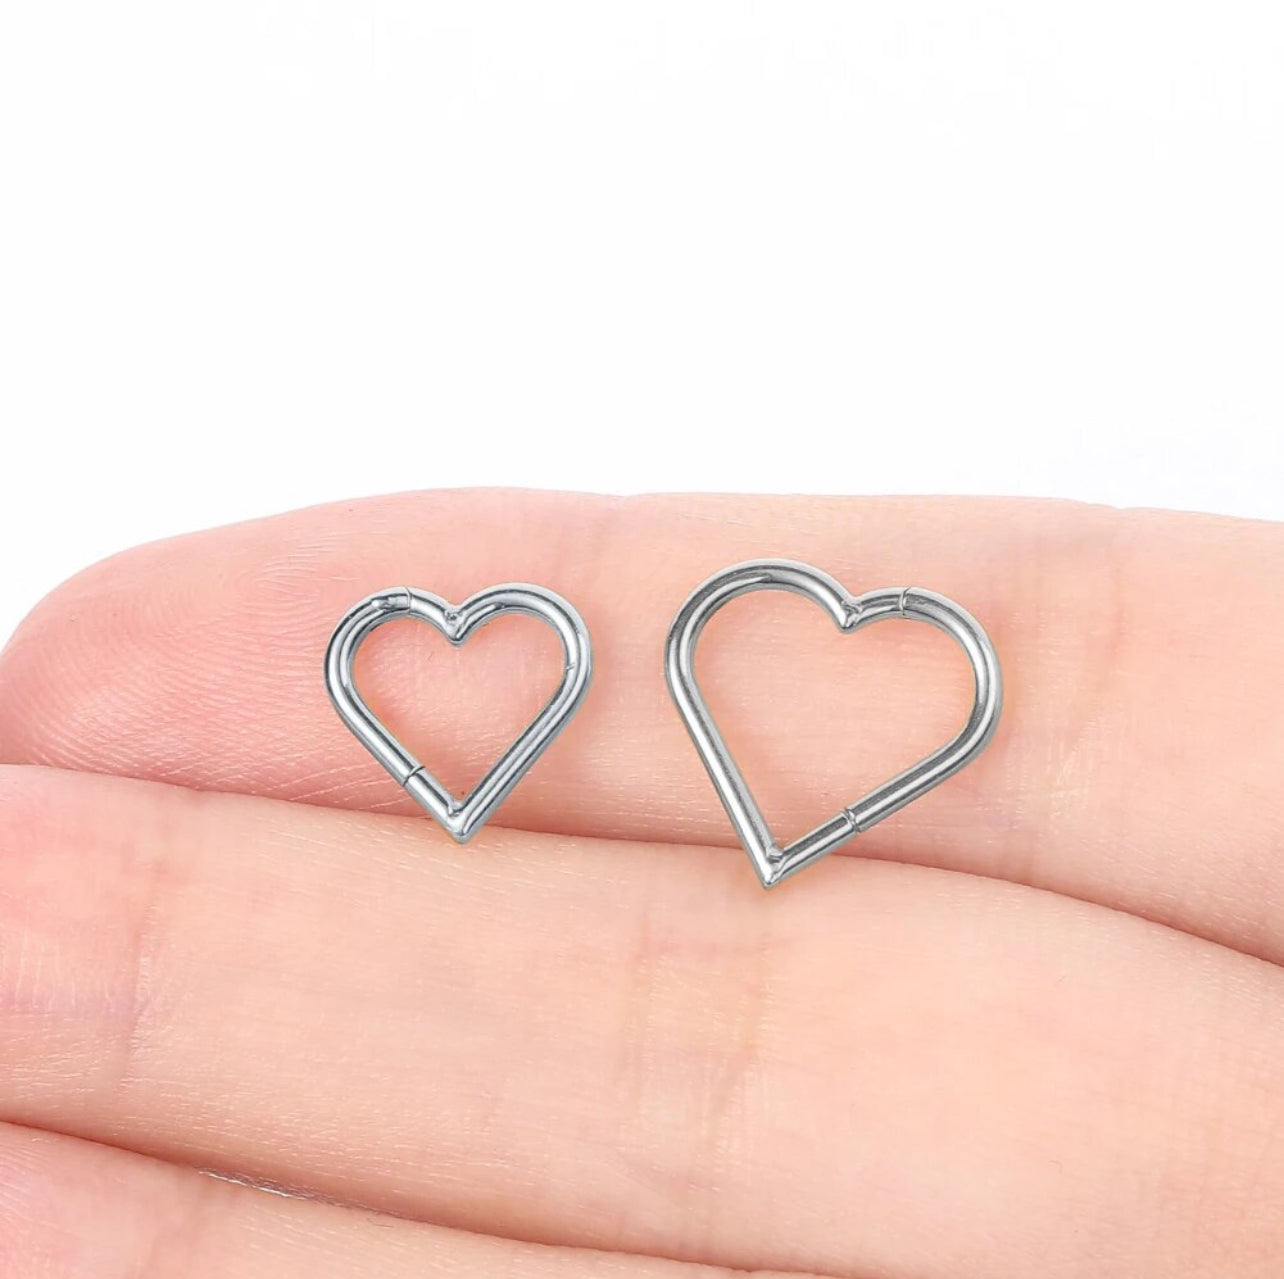 Heart segment seamless piercings jewellery